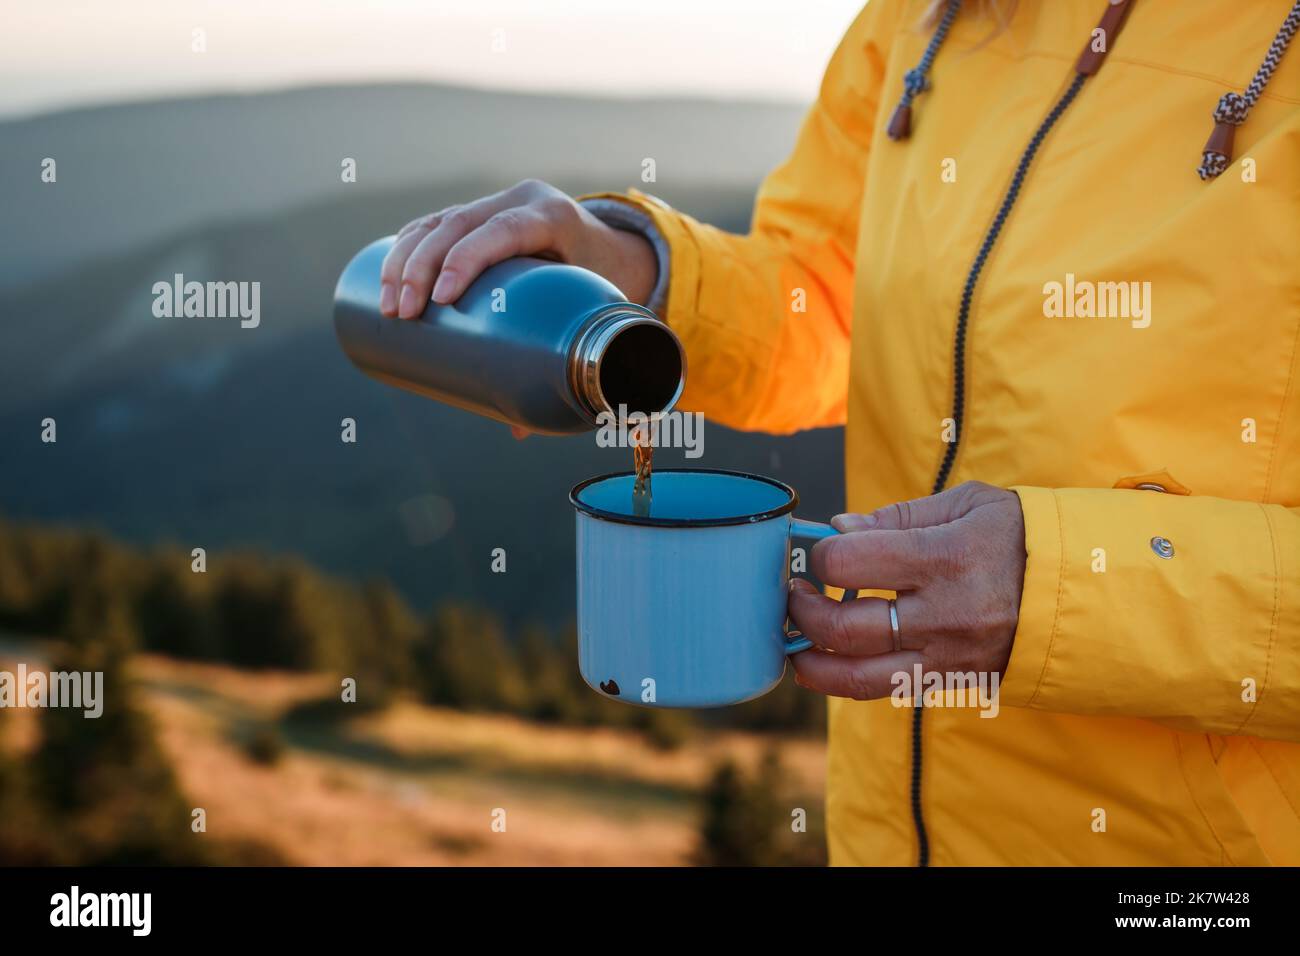 Le randonneur verse une boisson chaude du thermos dans une tasse de voyage dans les montagnes. Rafraîchissements pendant le trek Banque D'Images